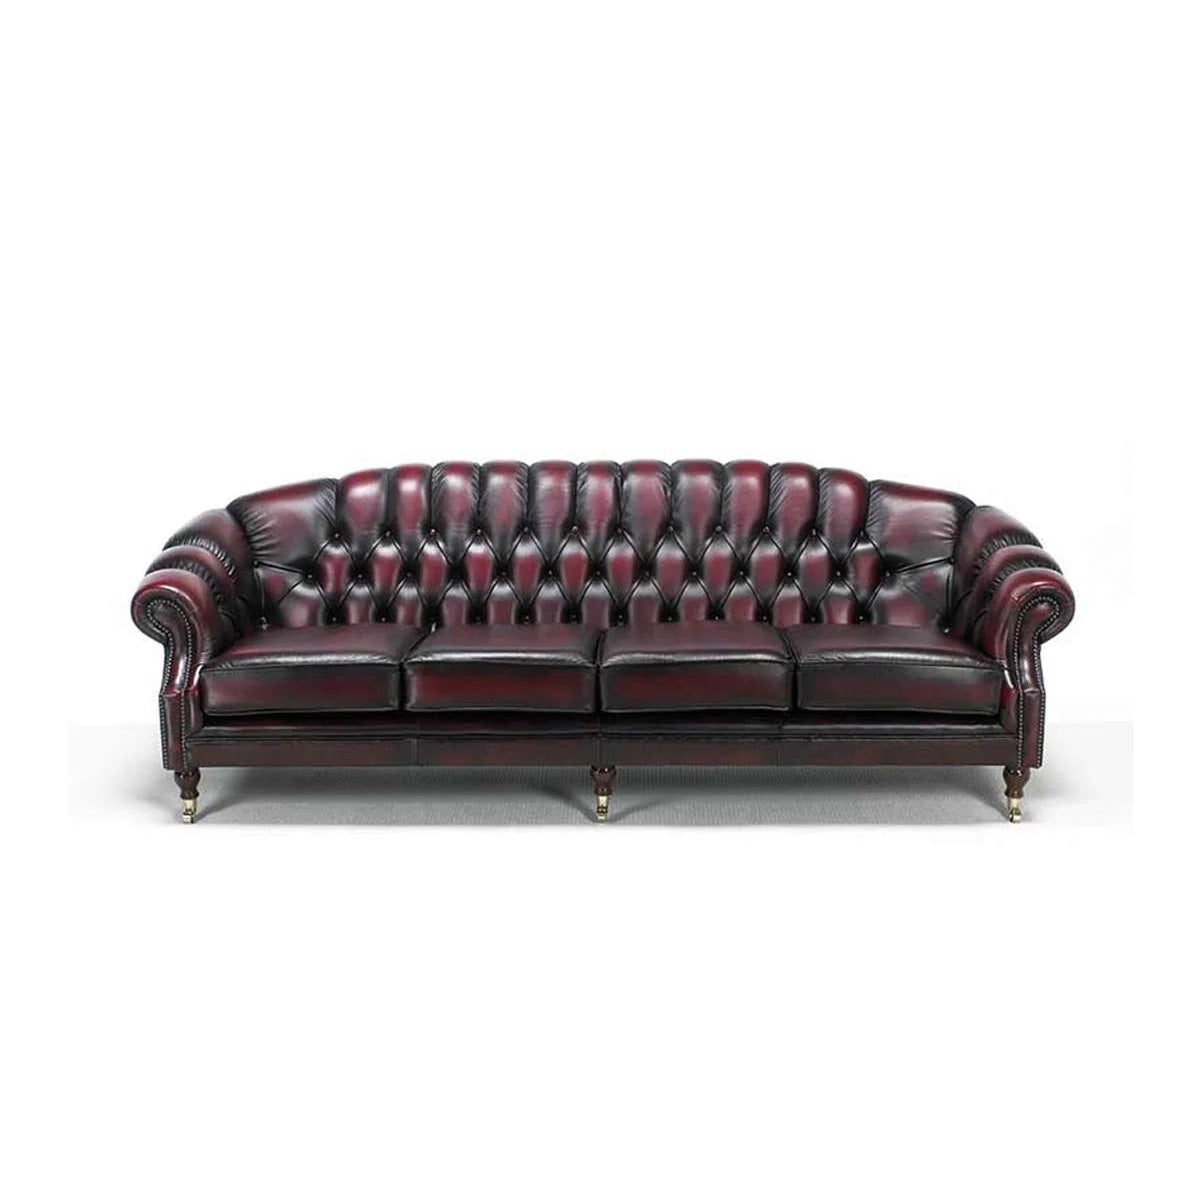 GRANVILLE Chesterfield Sofa